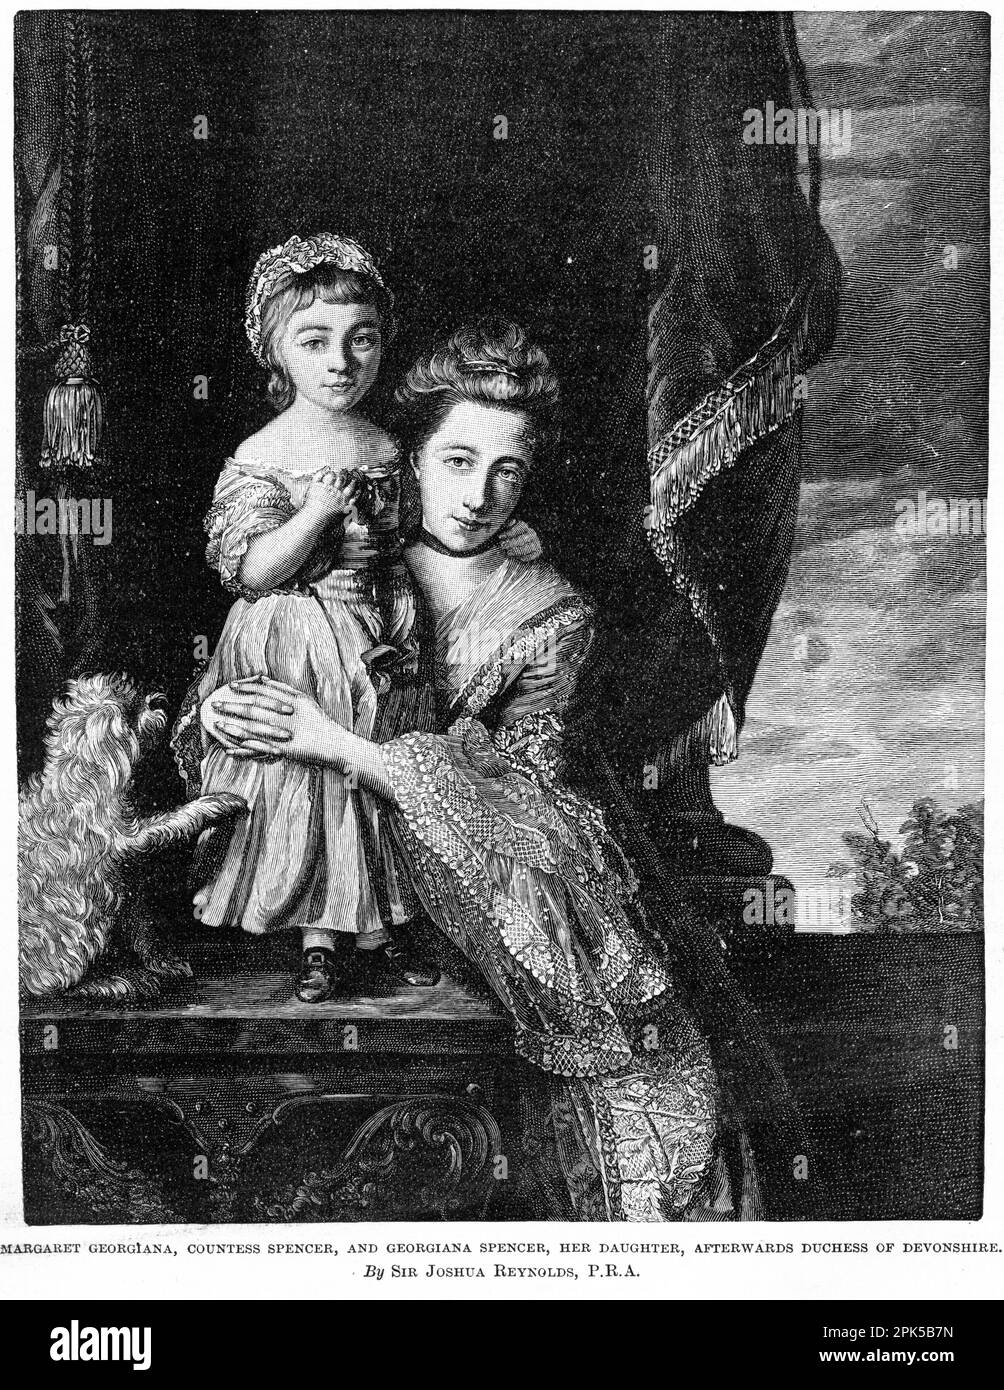 Ritratto di Margaret Georgiana, contessa Spencer e Georgiana Spencer, sua figlia, in seguito Duchessa del Devonshire. Pubblicato intorno al 1880 Foto Stock